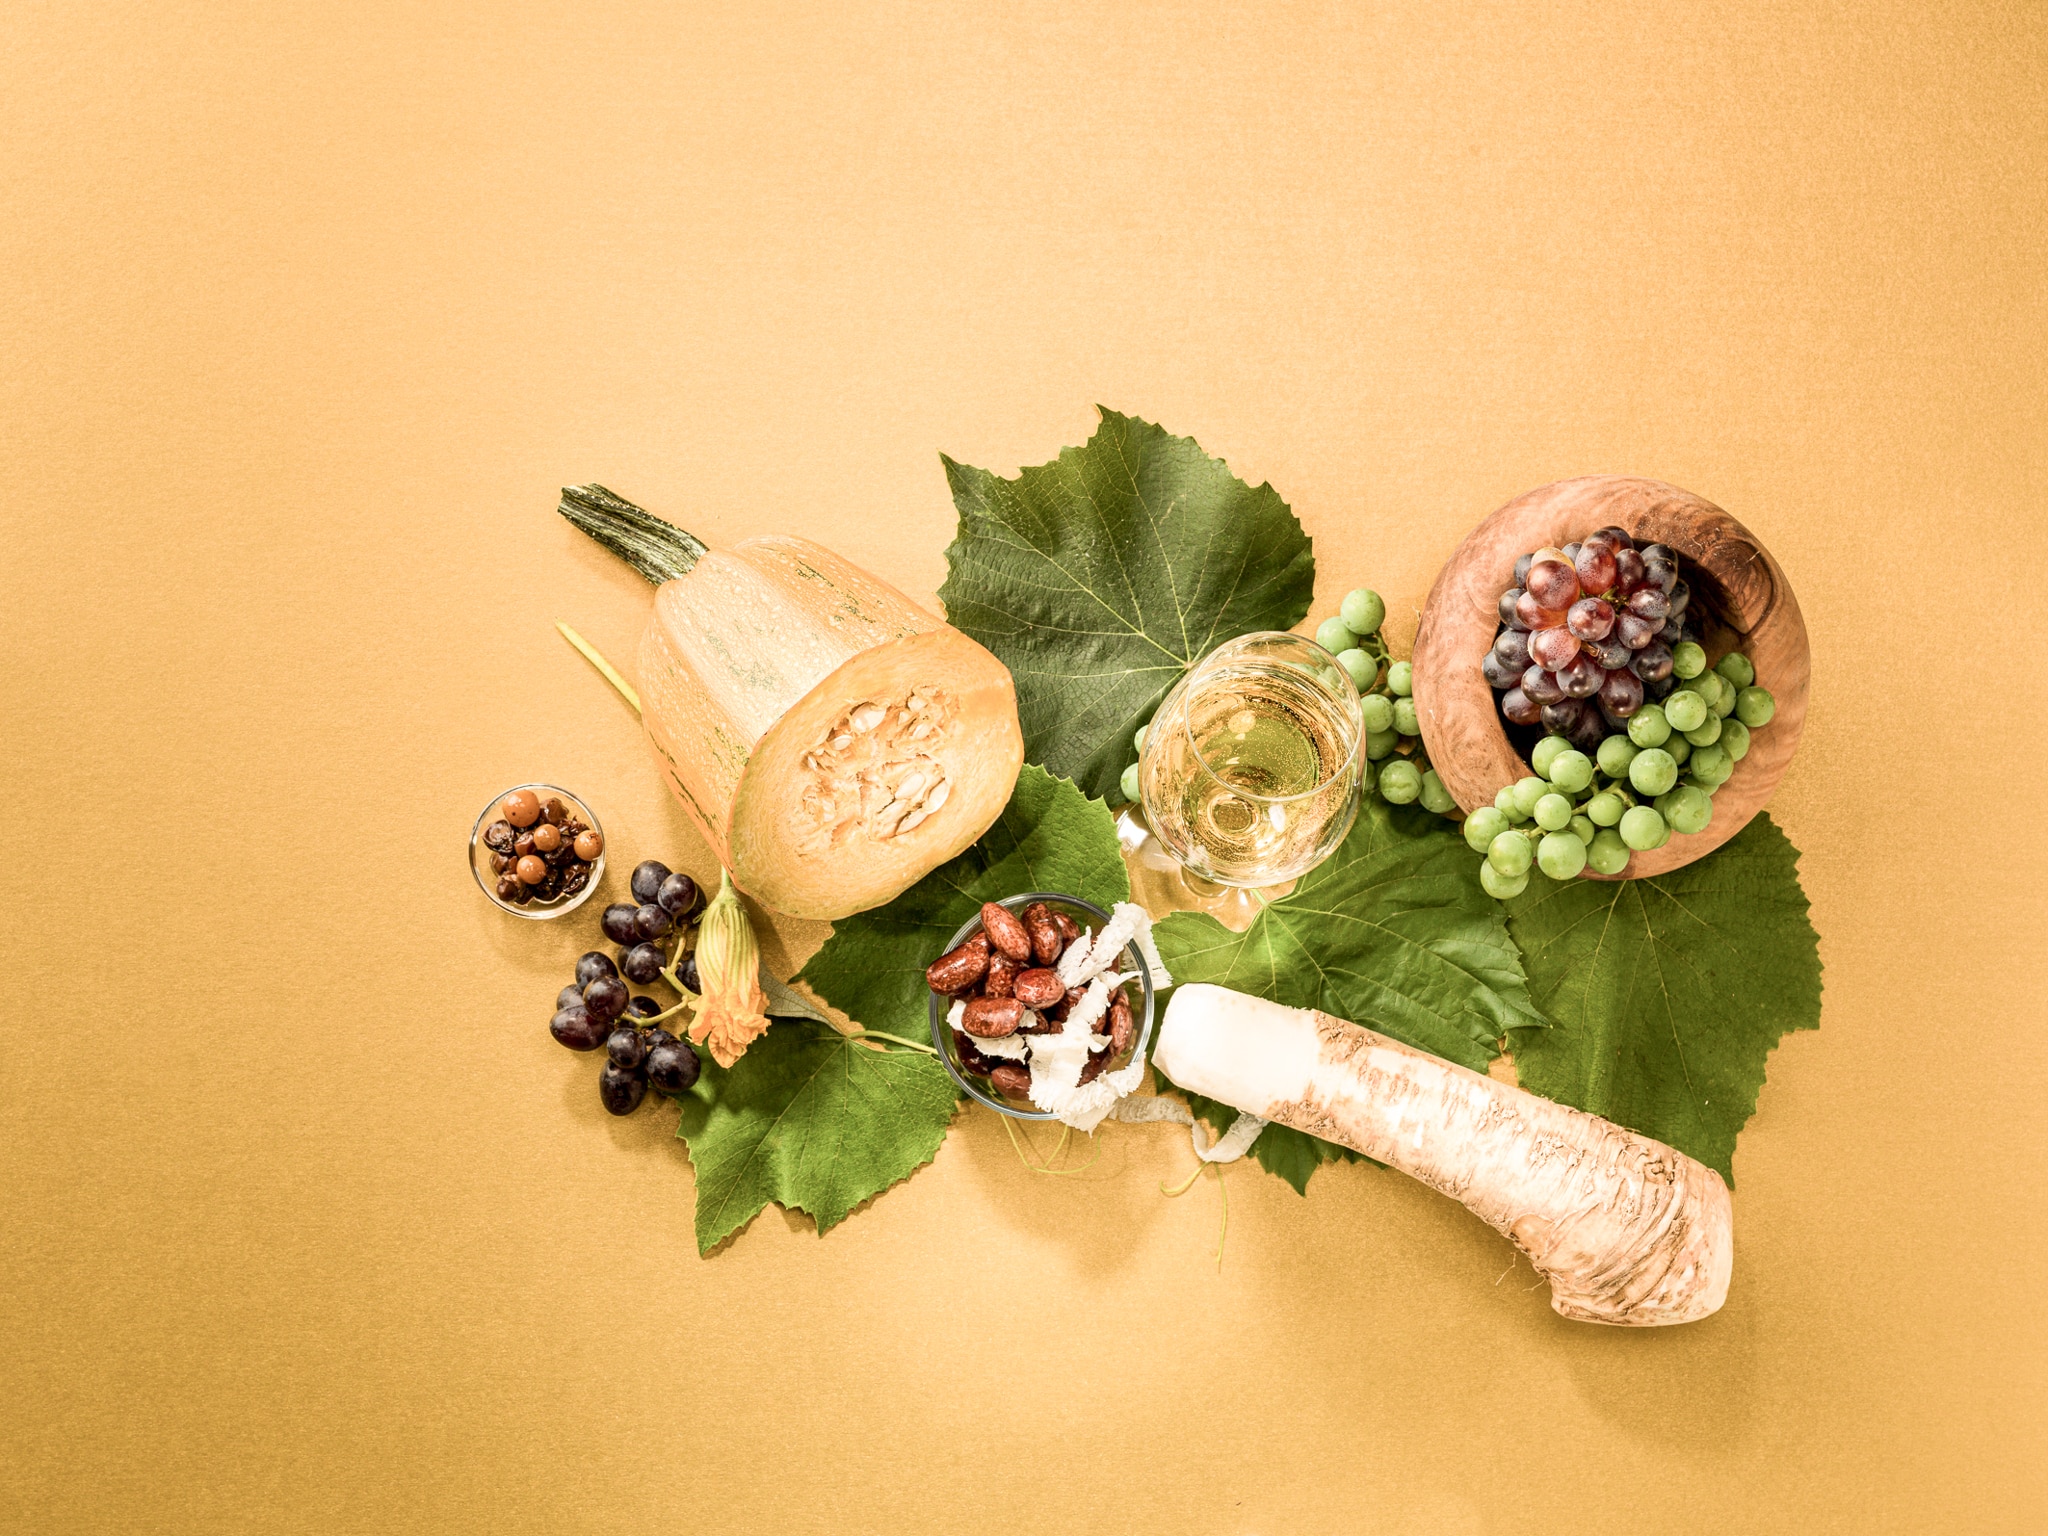 Zu sehen sind regionale Köstlichkeiten aus dem Thermen- und Vulkanland, etwa Weintrauben, Kren, Käferbohnen und ein Achterl Wein.